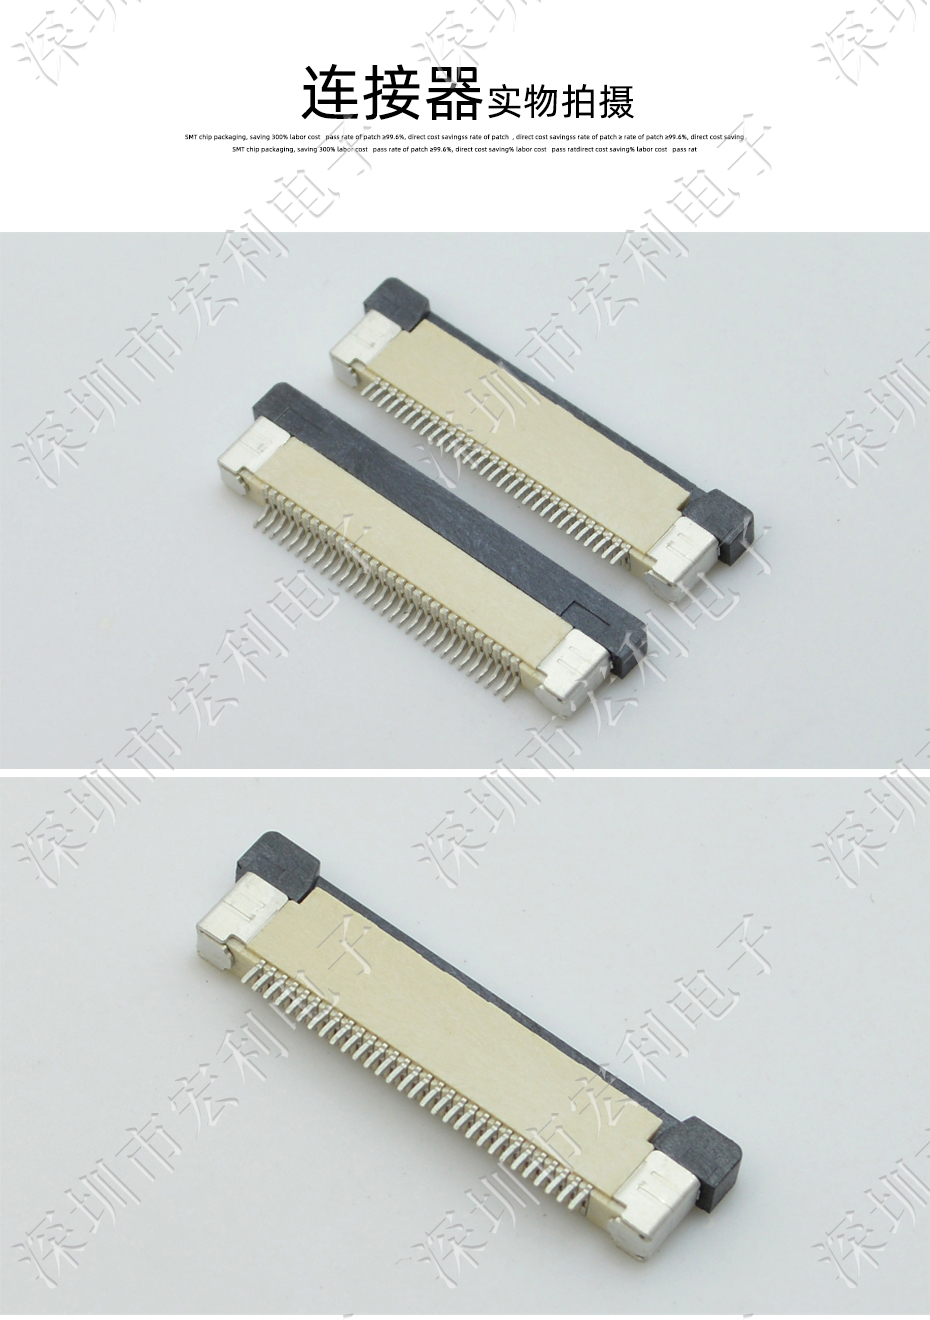 FFC/FPC连接器 软排线插座 0.5mm间距-60P 下接拉锁 60Pin 抽屉式